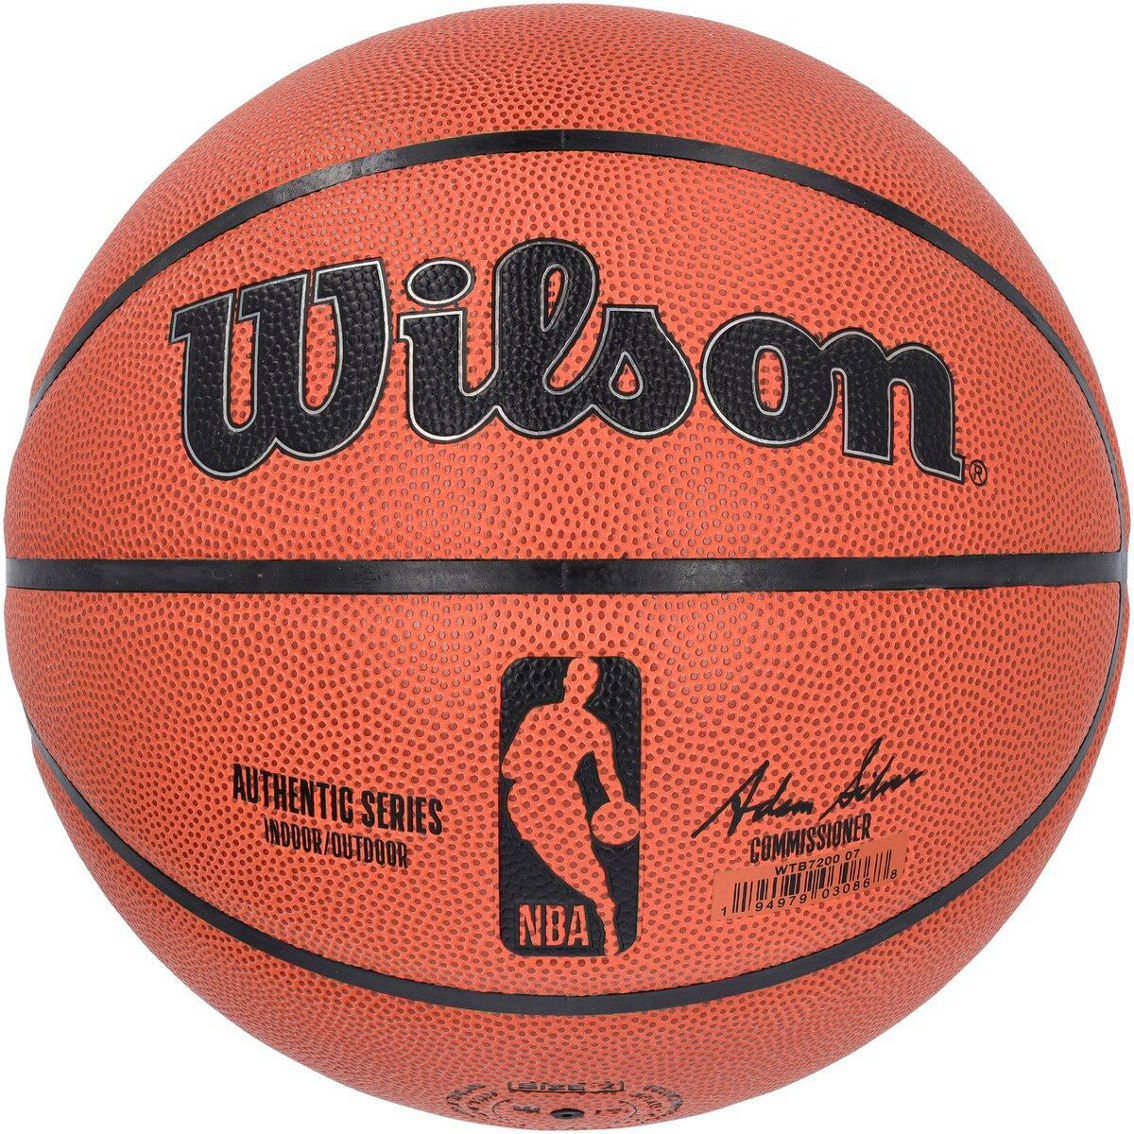 Wilson Wilson NBA Authentic Series Indoor/Outdoor Basketball - Image 2 of 4